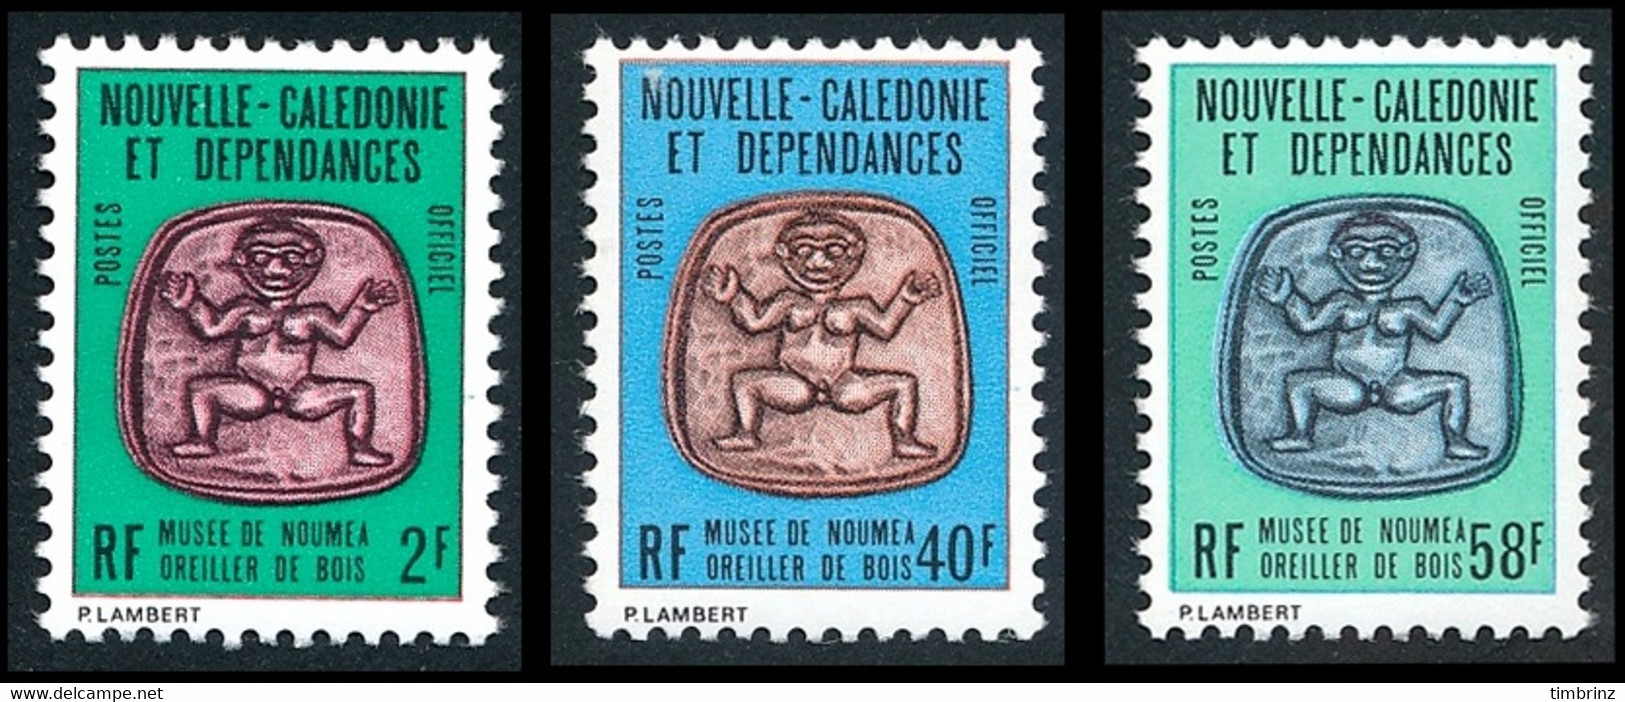 NOUV.-CALEDONIE 1986 - Yv. Service 38 39 Et 40 ** Cote= 4,00 EUR - Musée Nouméa. Oreiller Bois (3 Val) ..Réf.NCE25864 - Officials